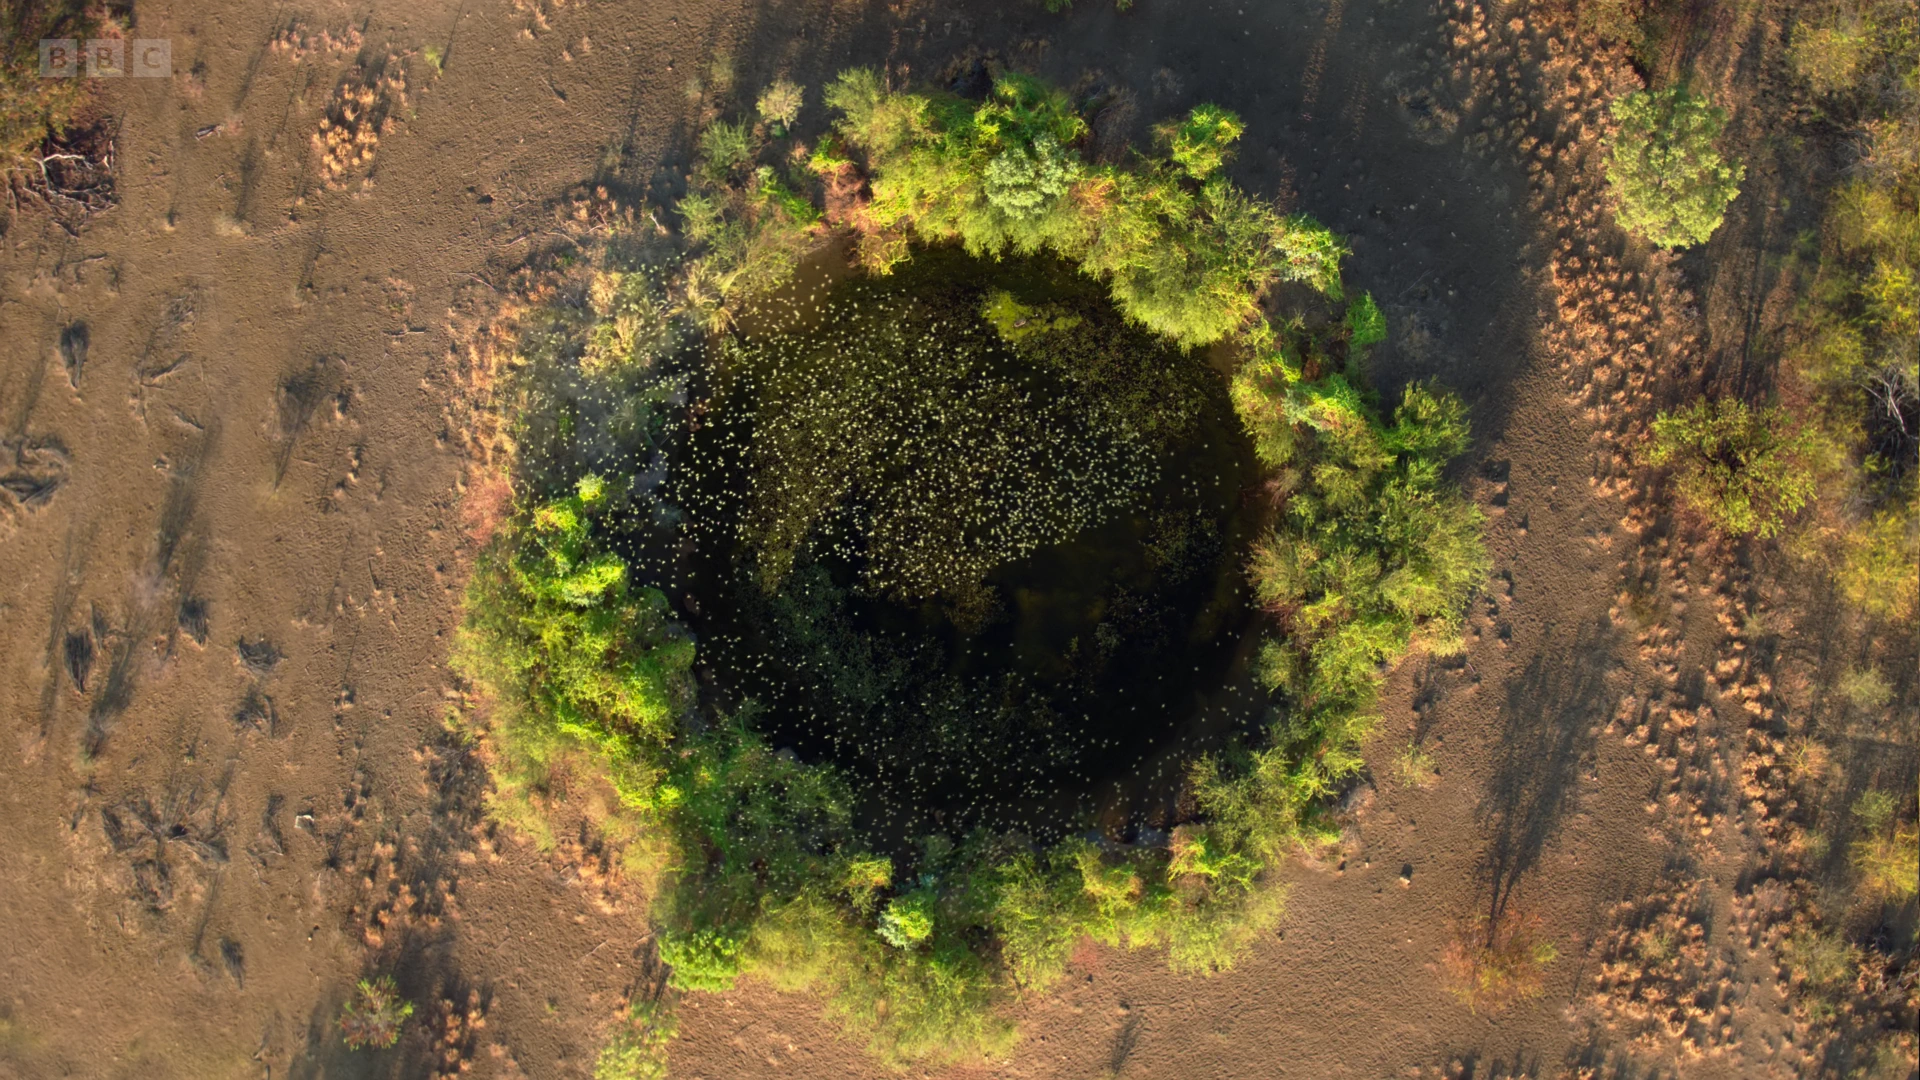 Budgerigar (Melopsittacus undulatus) as shown in Seven Worlds, One Planet - Australia